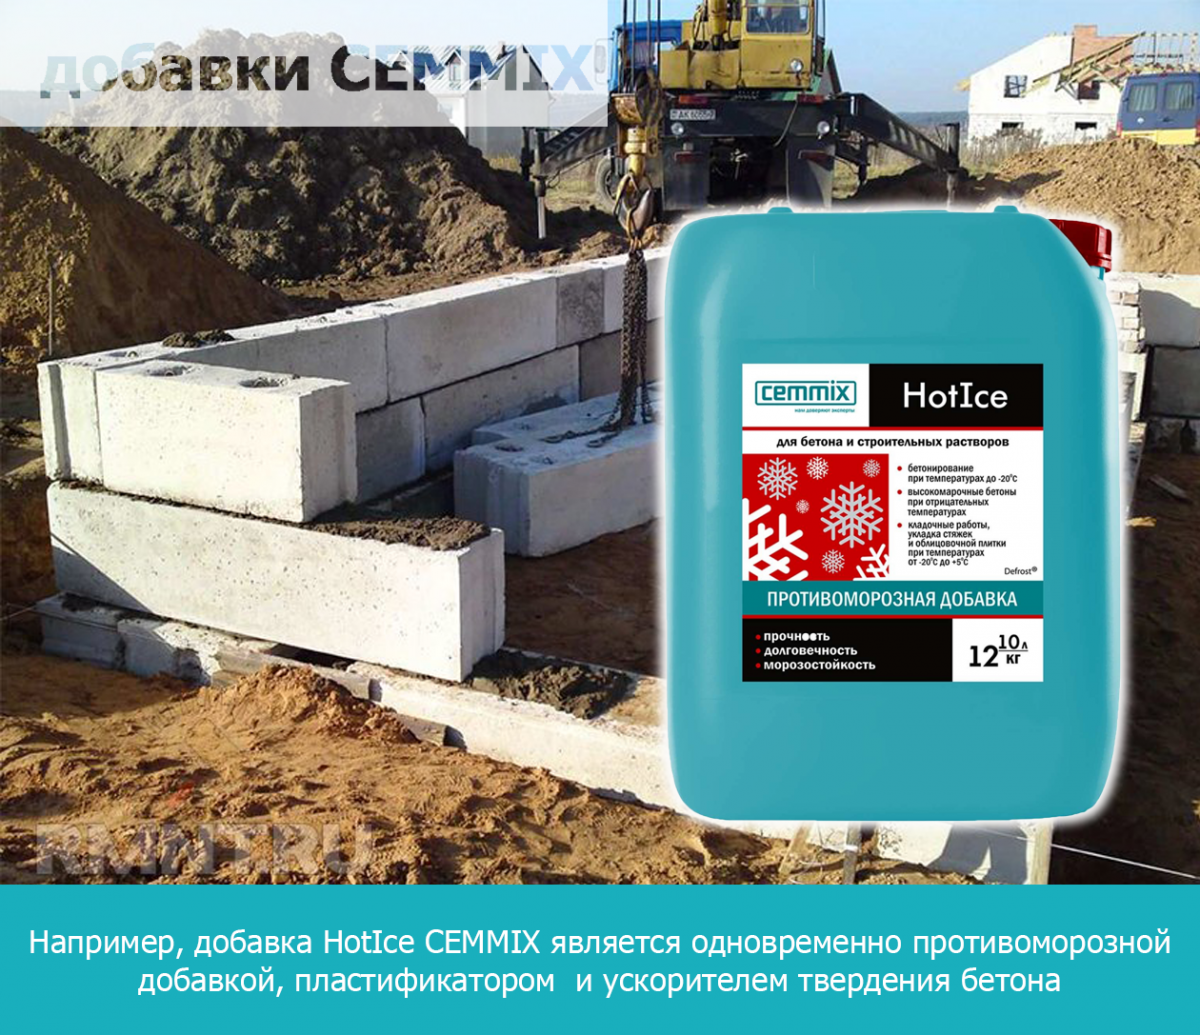 HotIce CEMMIX является одновременно противоморозной добавкой, пластификатором и ускорителем твердения бетона